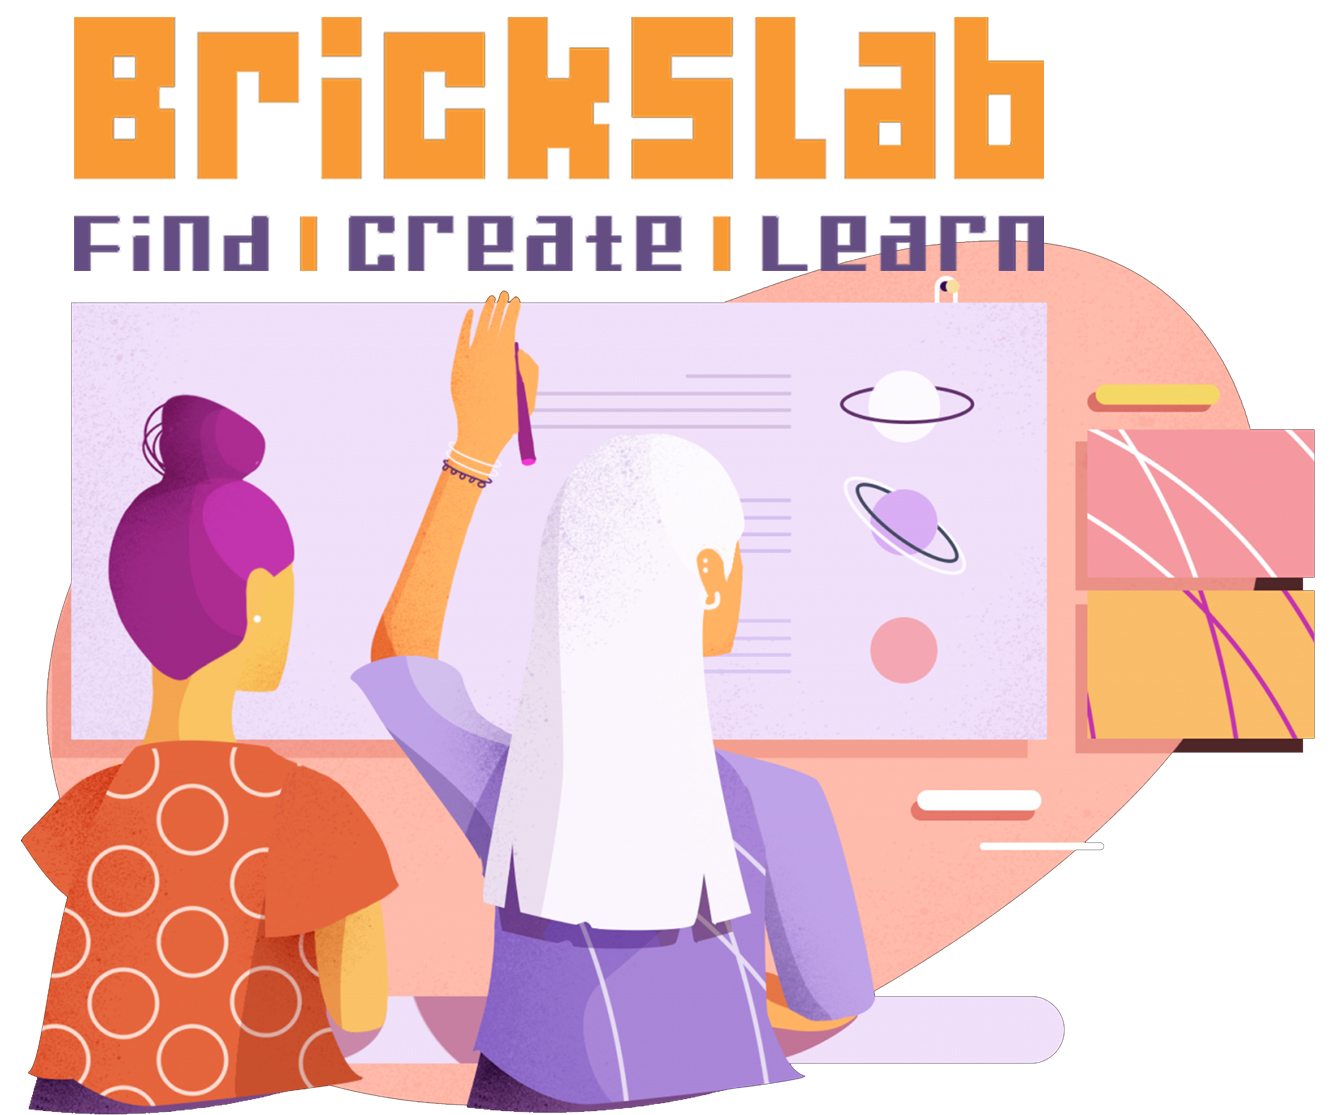  Brickslab - Piattaforma multidisciplinare per creare lezioni e test